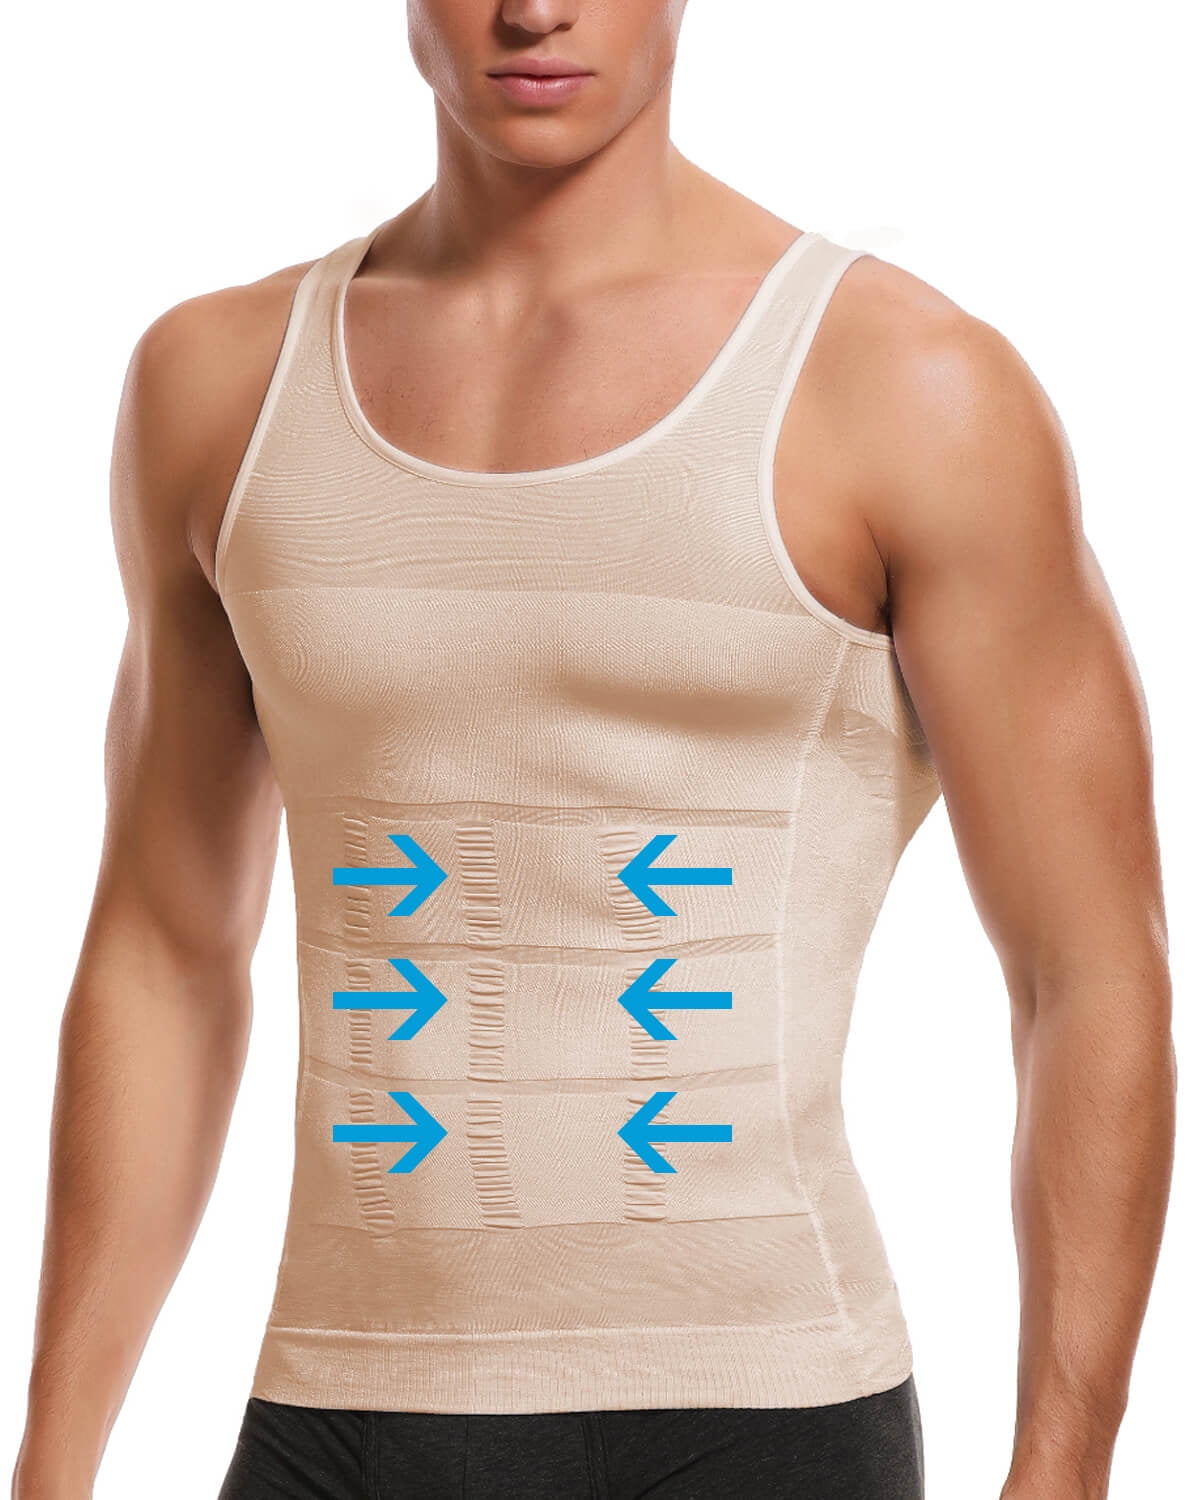 Vaslanda Men's Slimming Body Shaper Vest Compression Shirt Gym